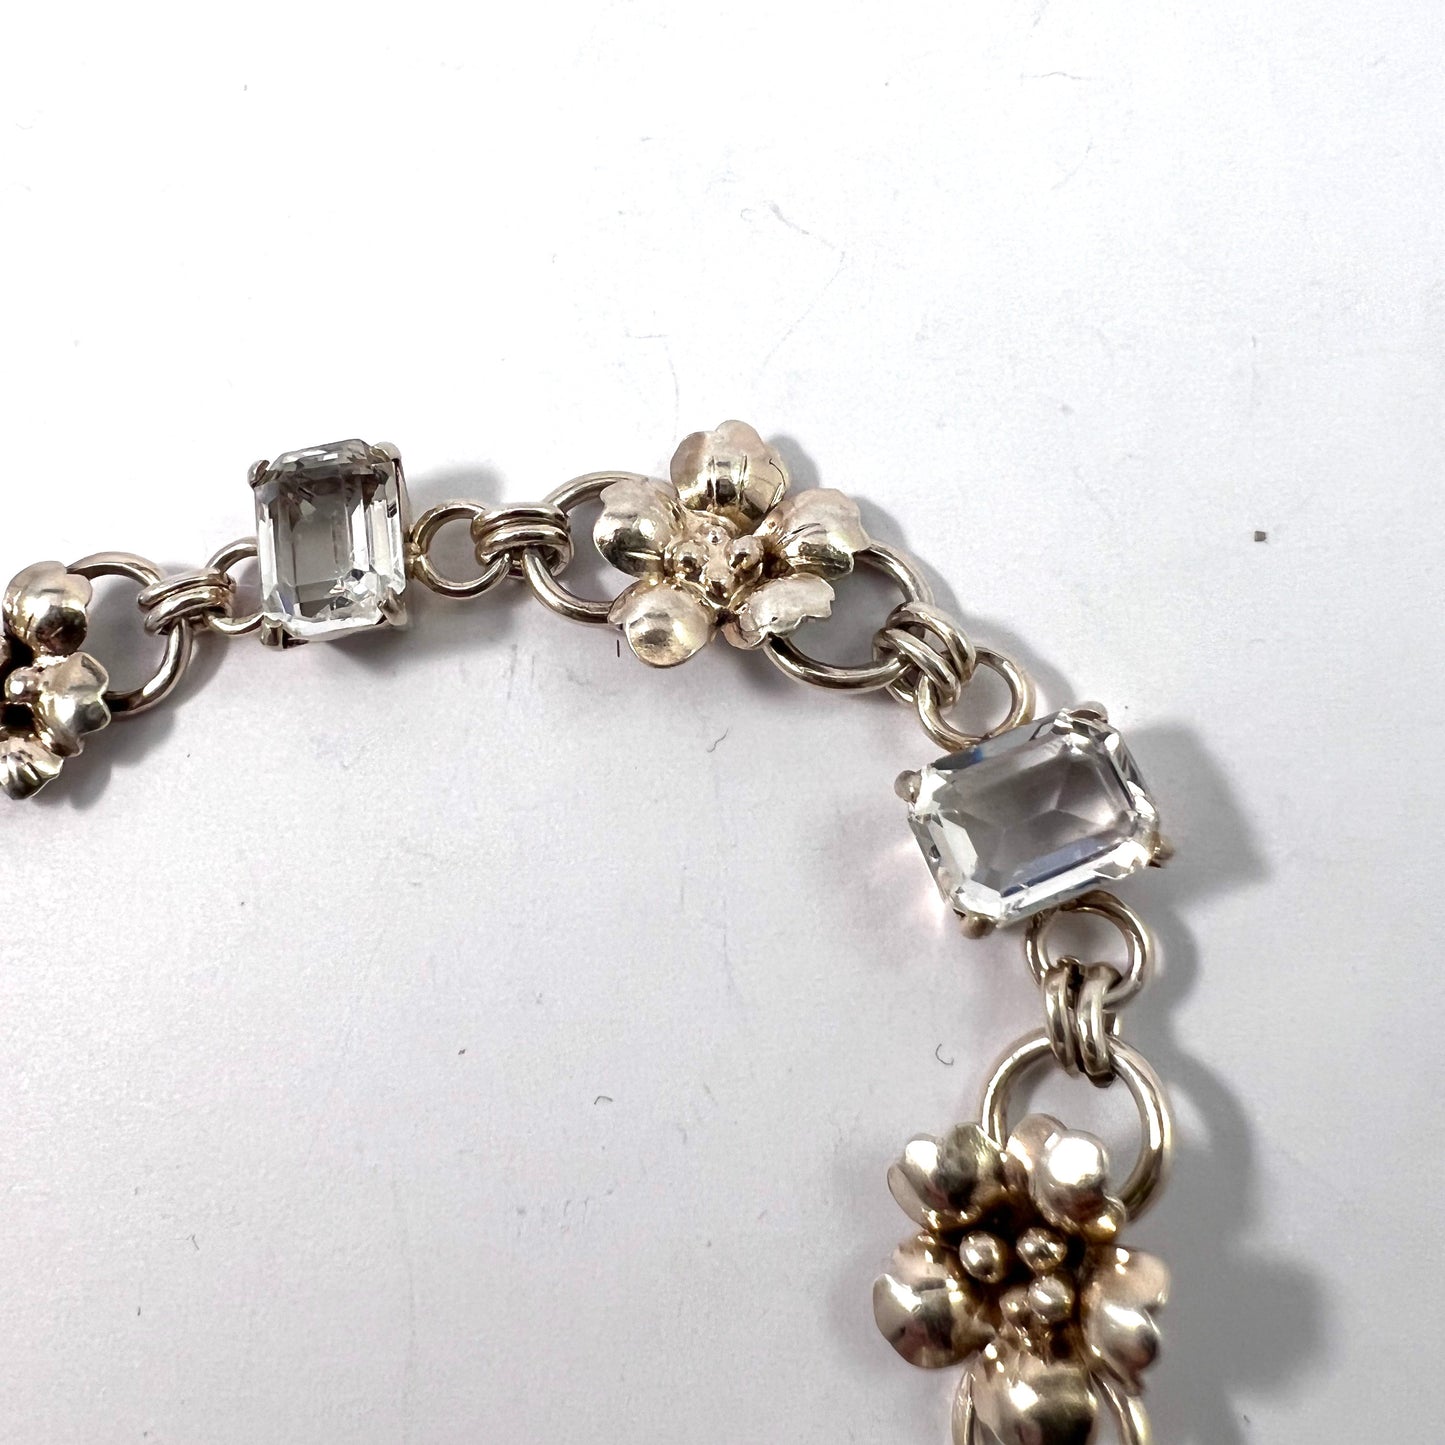 Dahlgren, Sweden 1951. Vintage Sterling Silver Rock Crystal Bracelet.